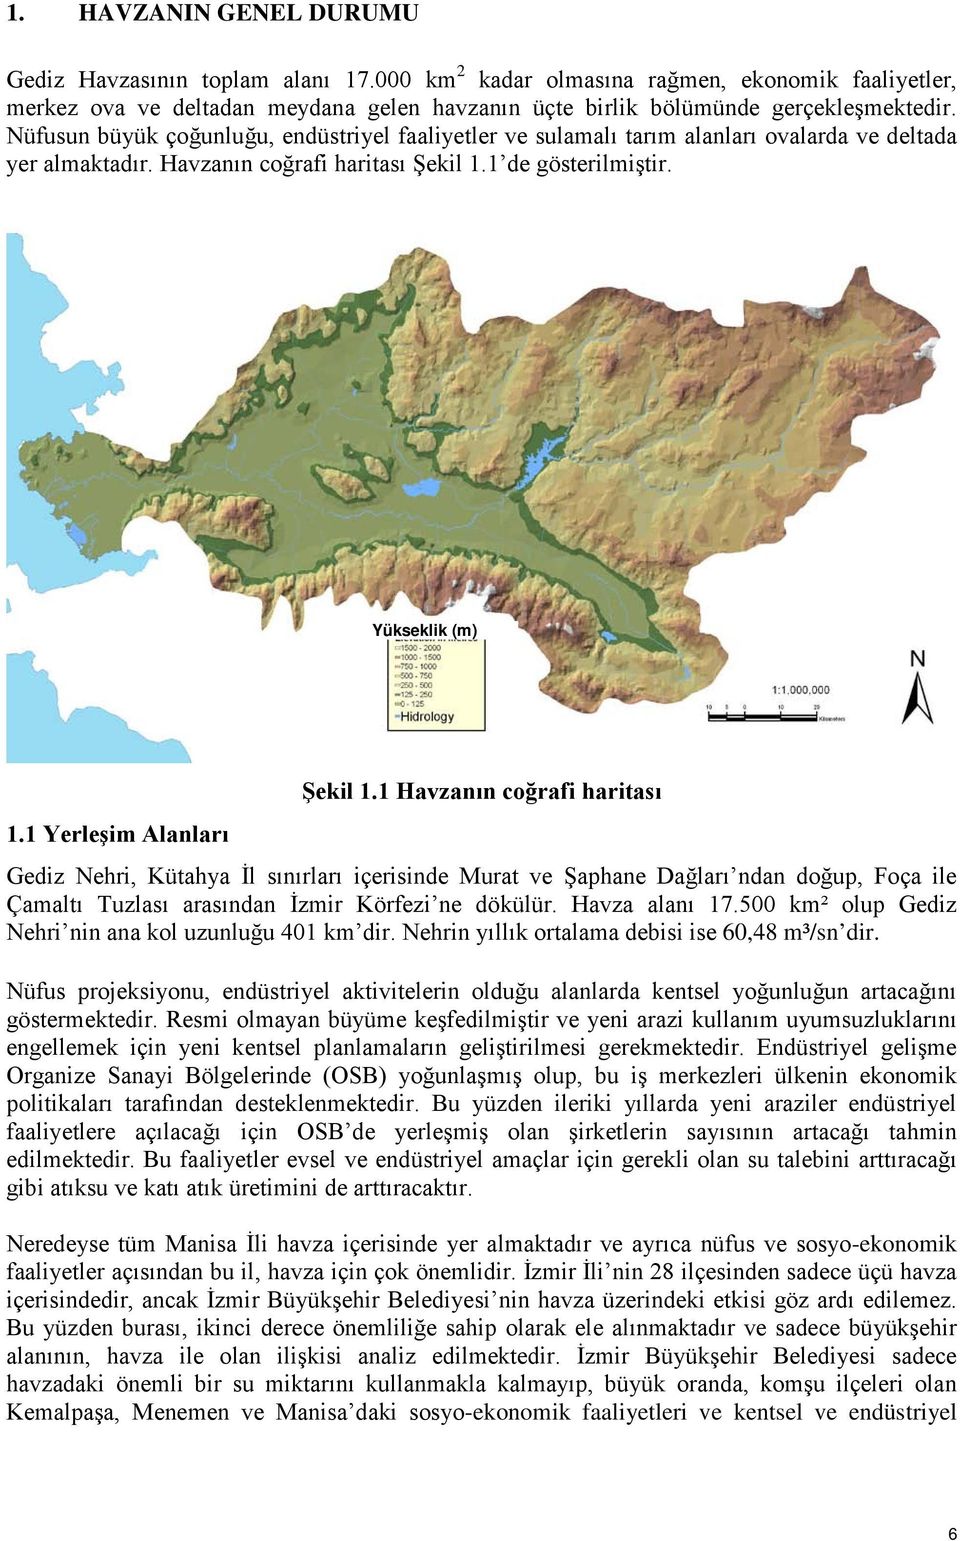 1 Yerleşim Alanları Şekil 1.1 Havzanın coğrafi haritası Gediz Nehri, Kütahya İl sınırları içerisinde Murat ve Şaphane Dağları ndan doğup, Foça ile Çamaltı Tuzlası arasından İzmir Körfezi ne dökülür.